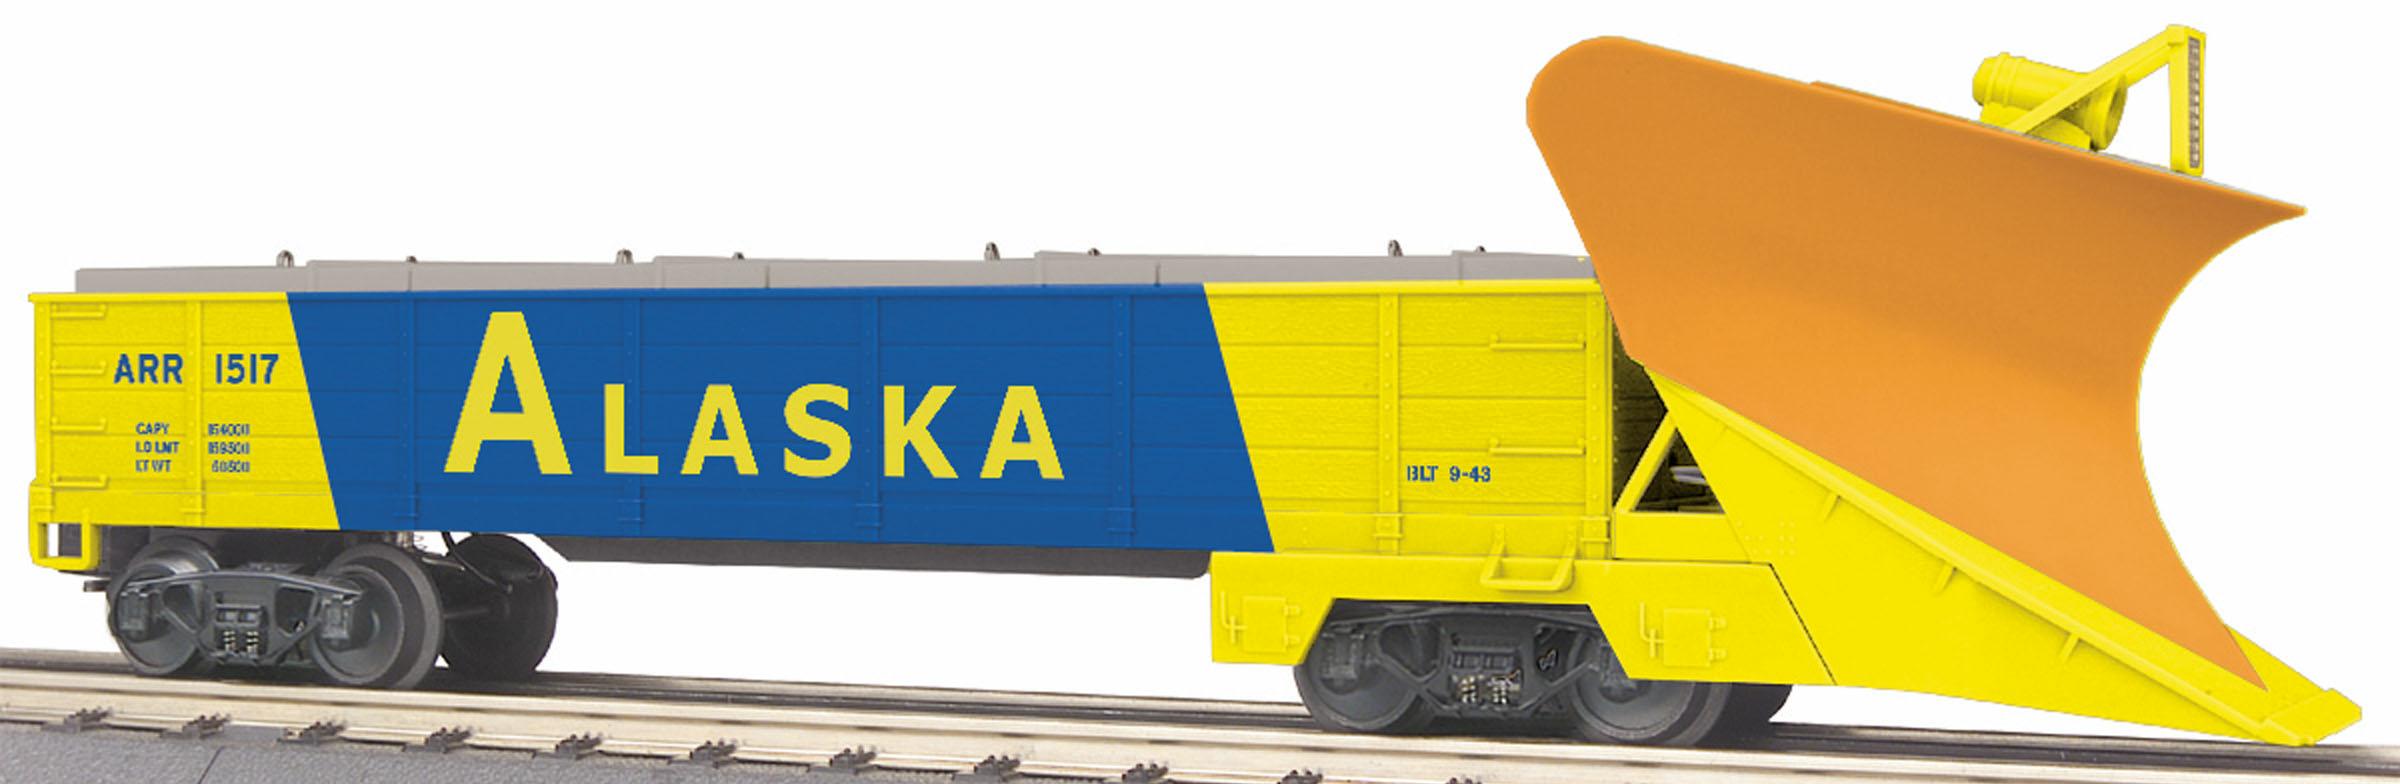 Alaska Railroad Heavy Duty Snowplow image